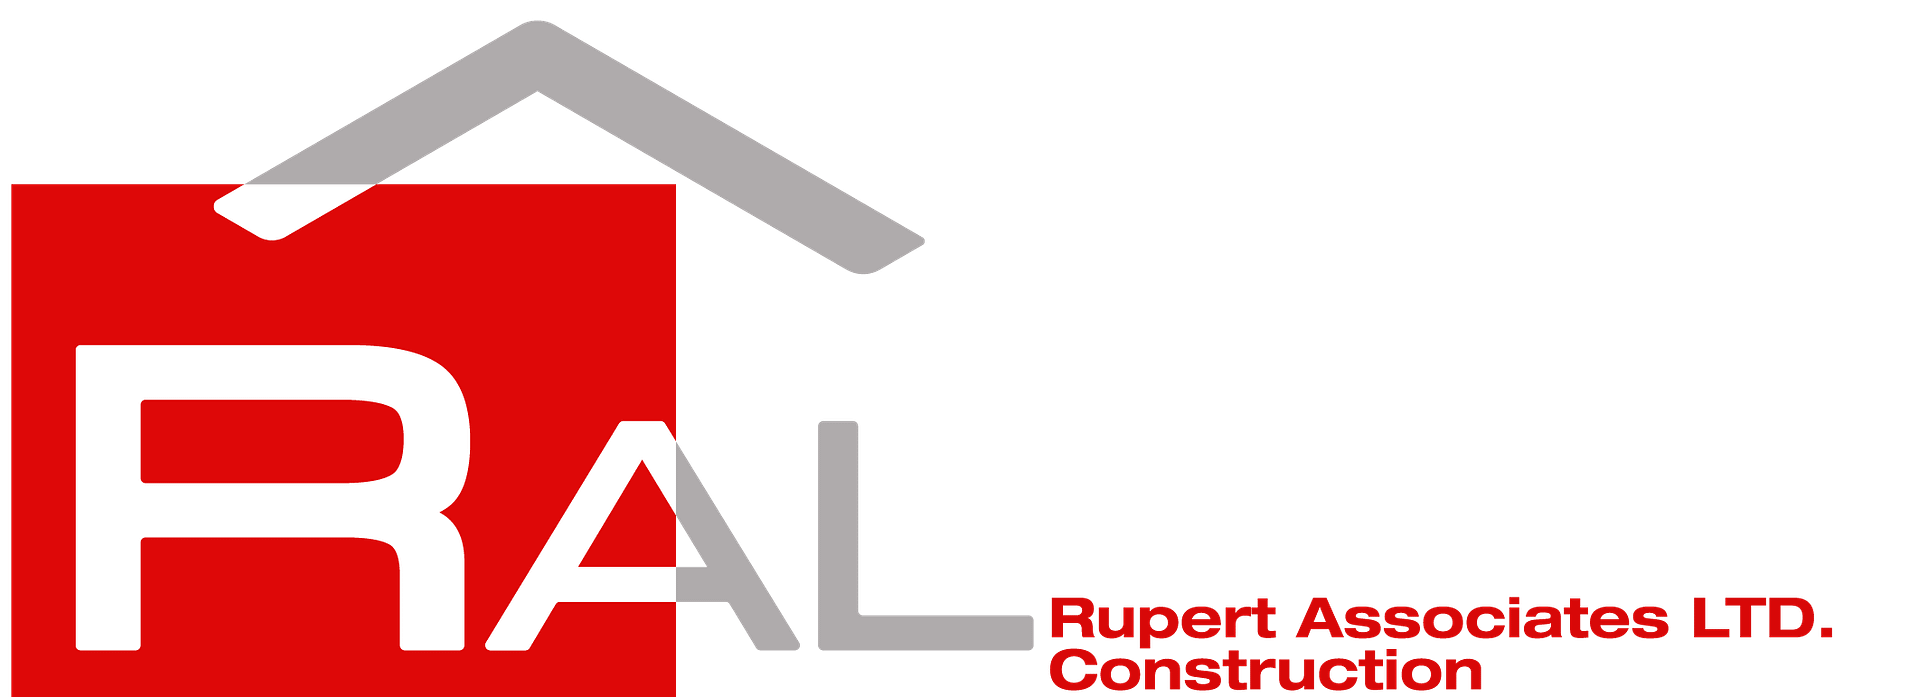 RUPERT ASSOCIATES LTD. RALC-New-Logo-e1688471523447 Coming Soon  